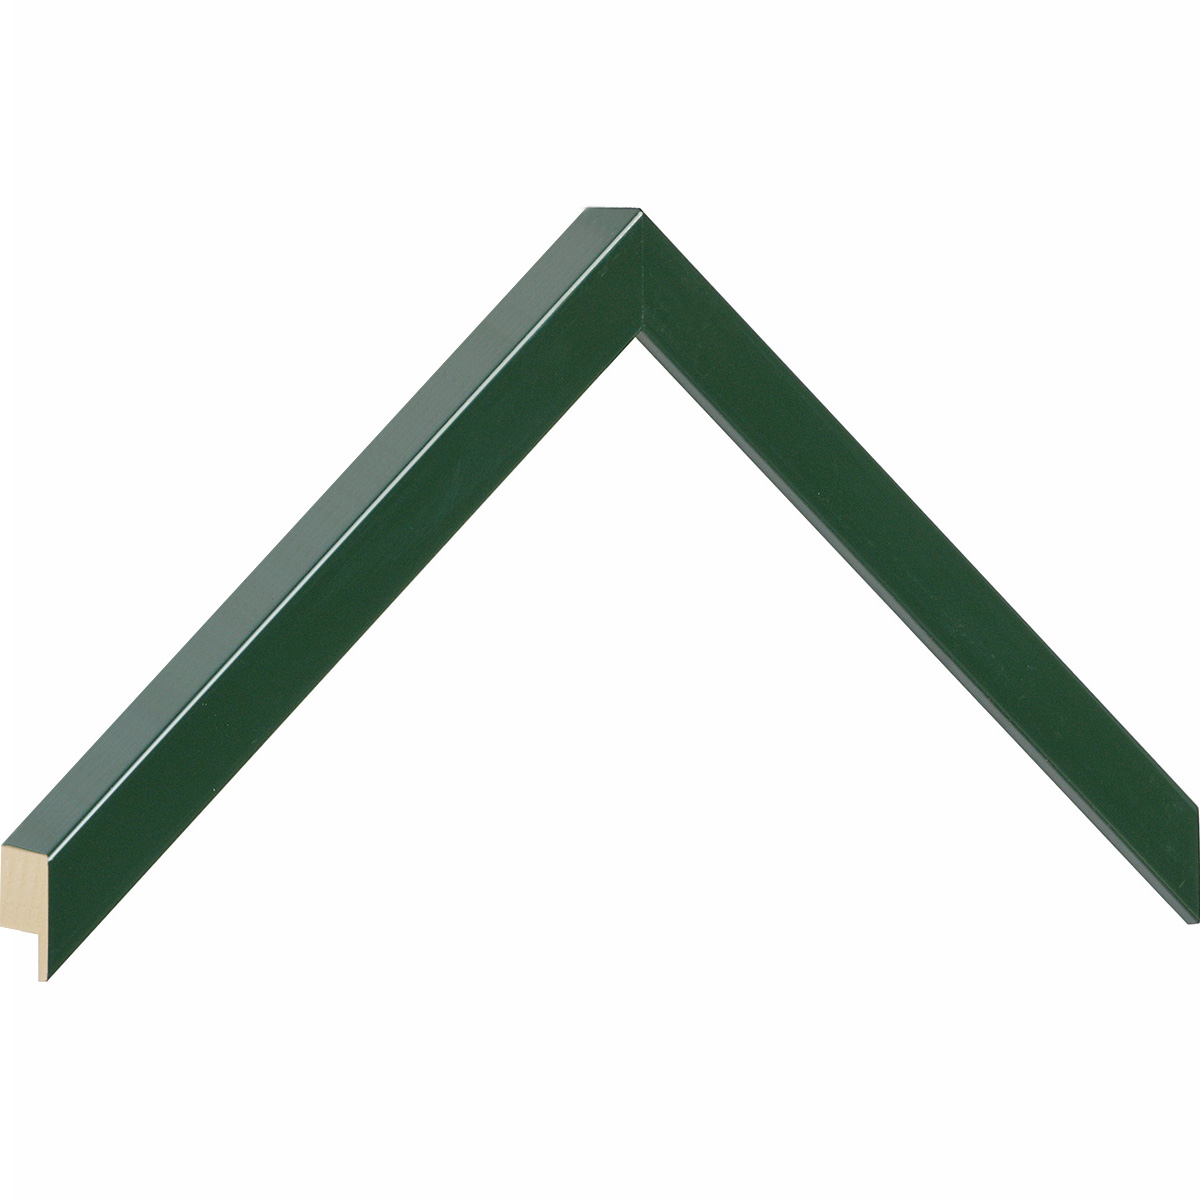 Bilderleiste Ayous flach 15 mm breit 25 hoch - Grün glänzend - Musterwinkel